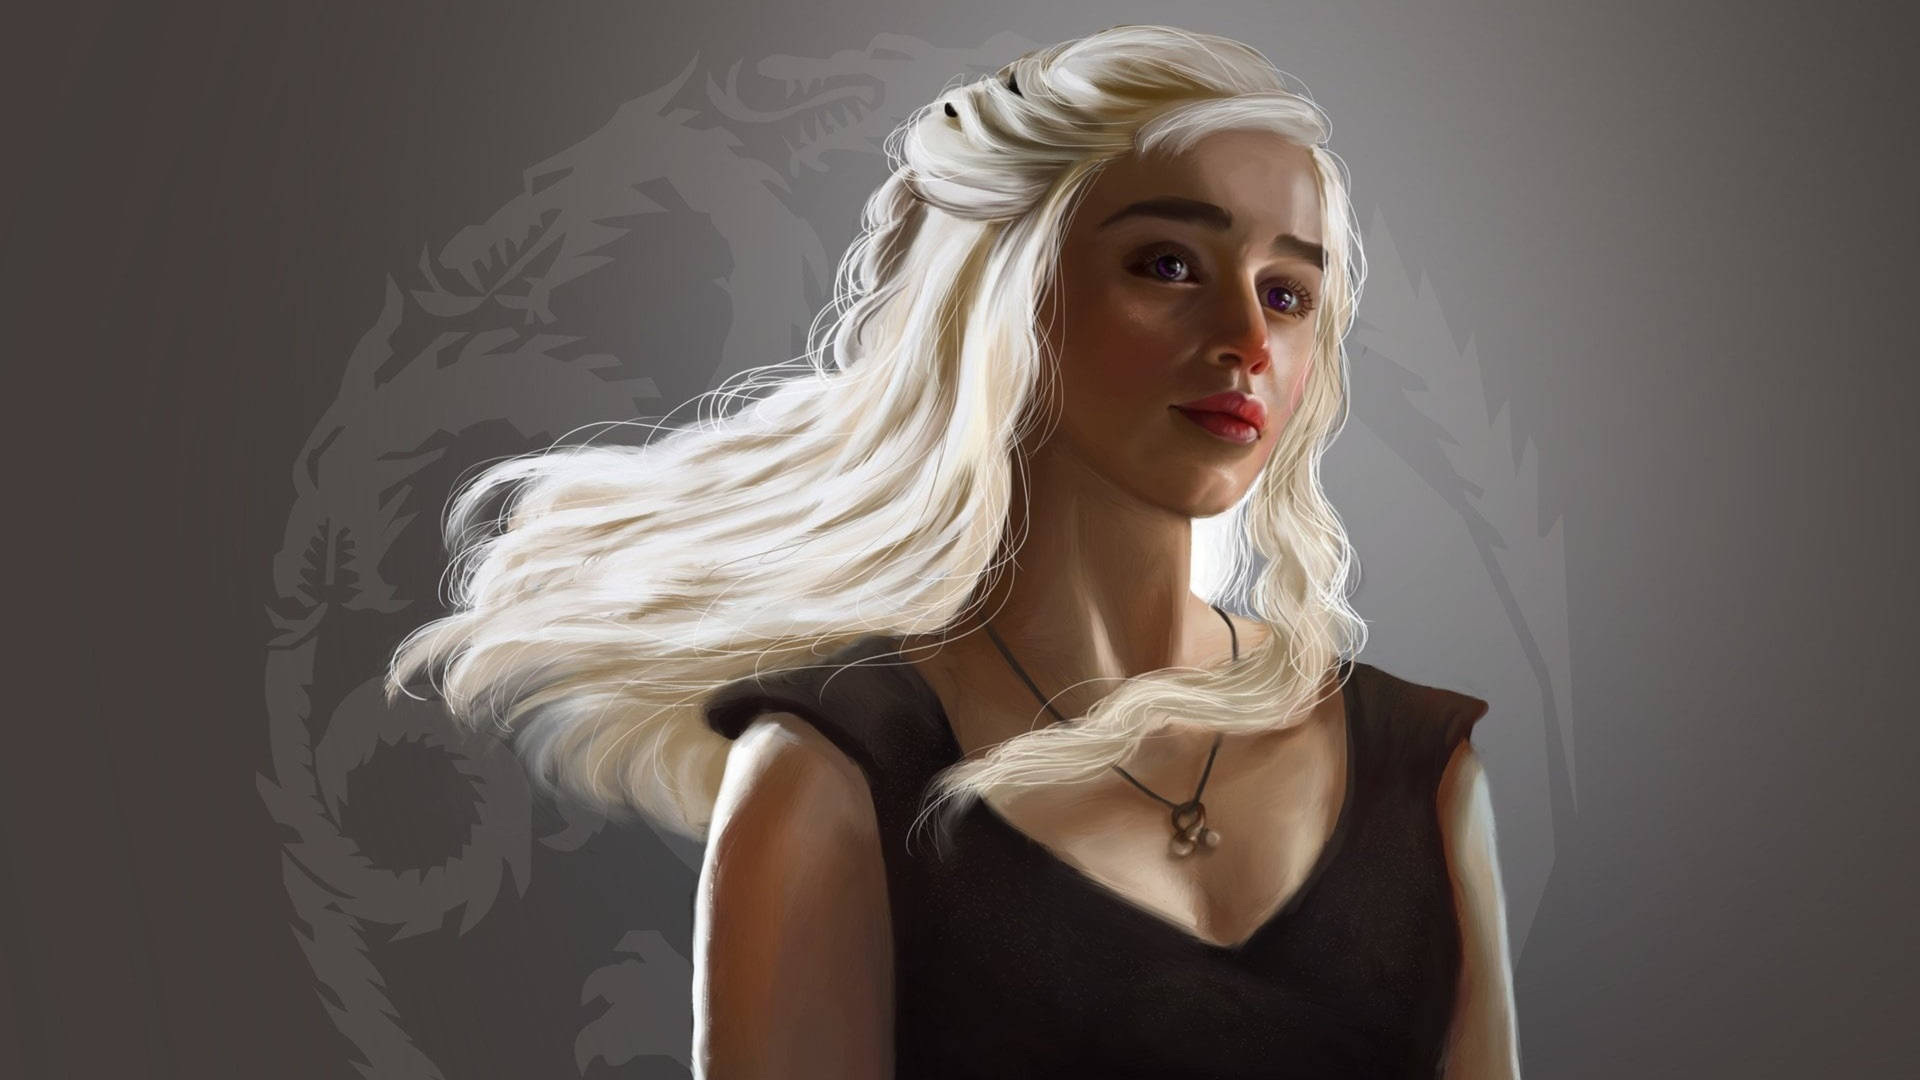 Daenerys Targaryen Sigil Fan Art Background